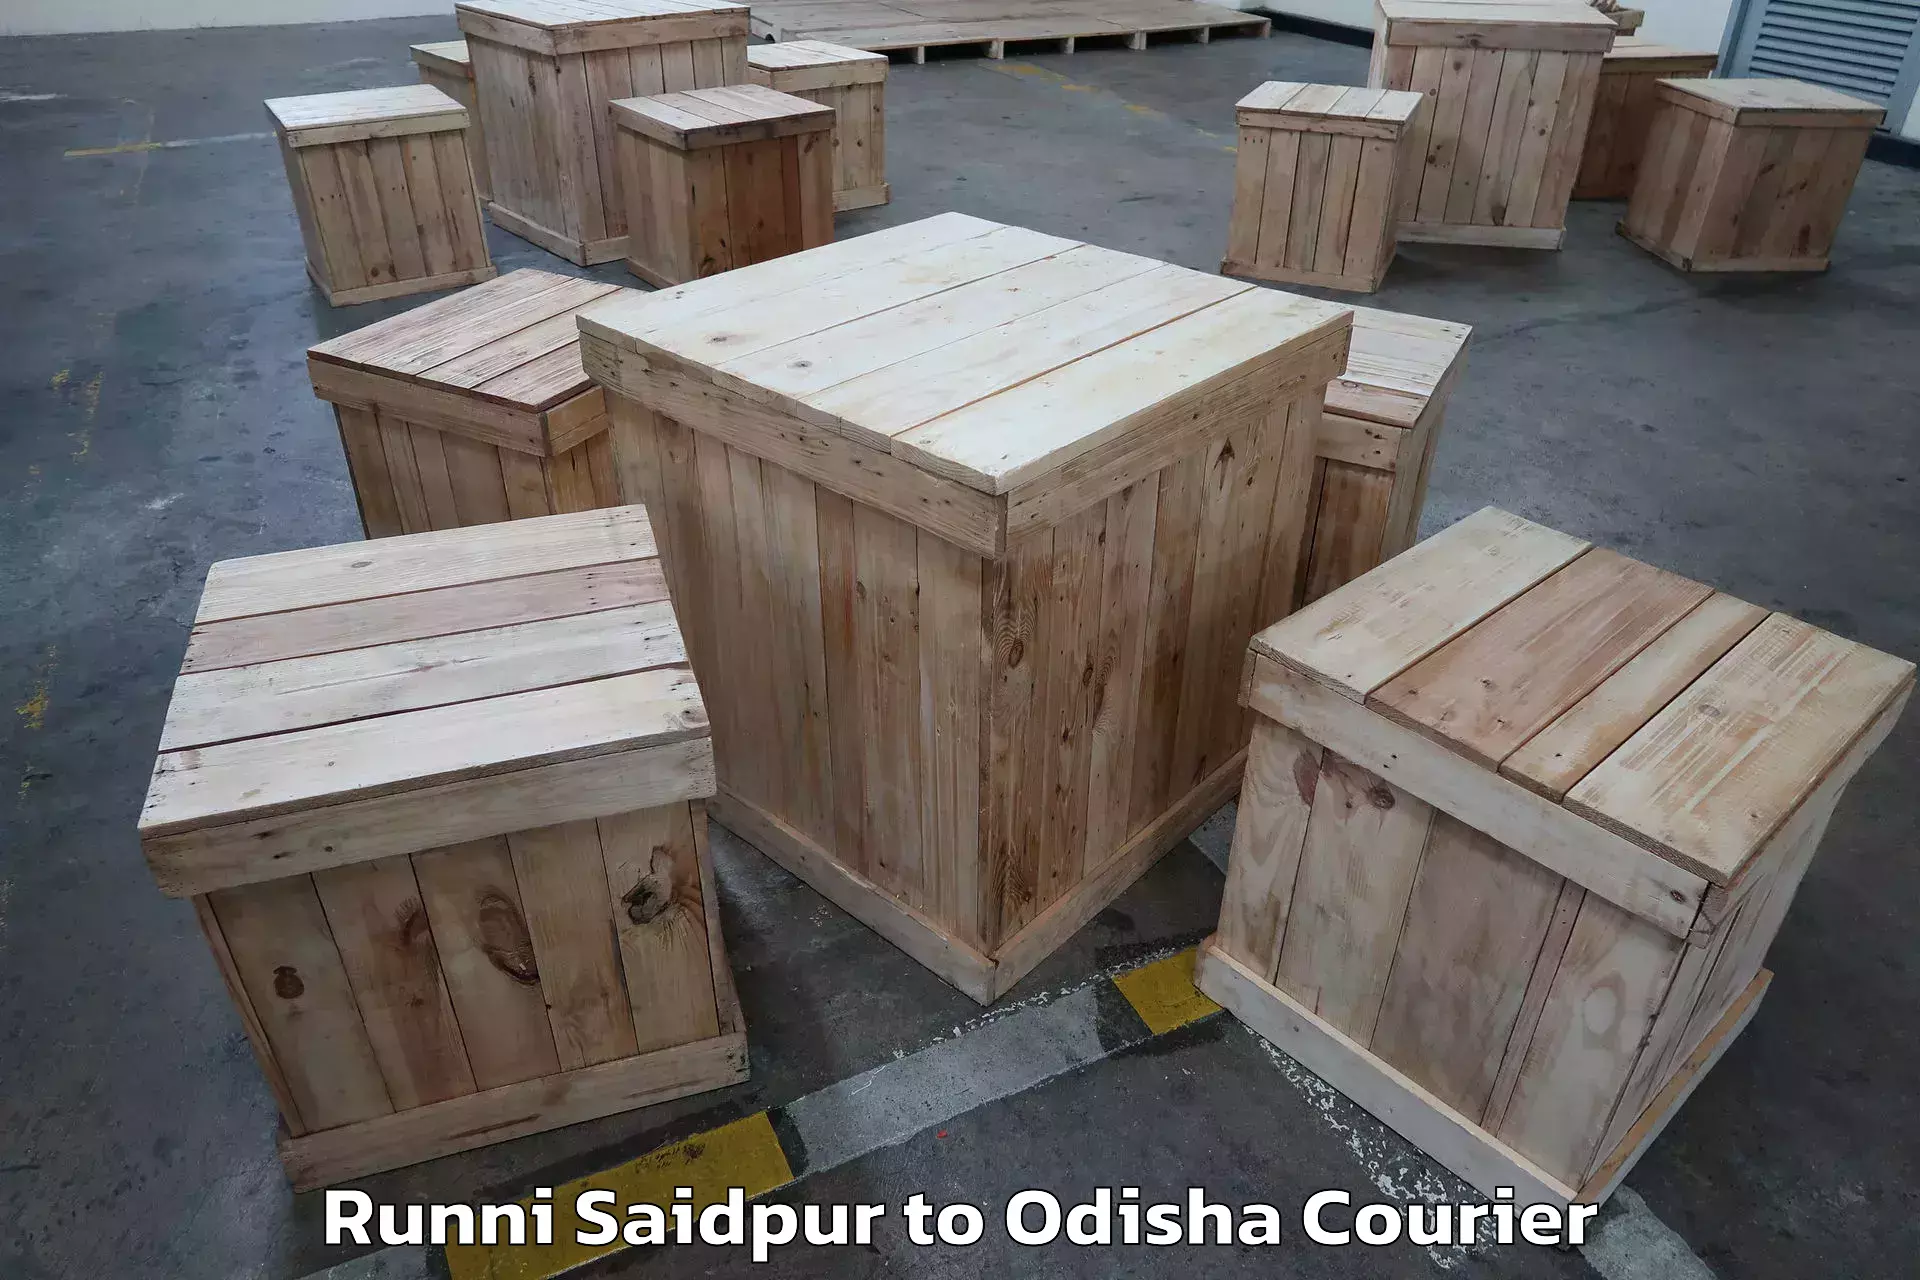 Full-service relocation Runni Saidpur to Odisha